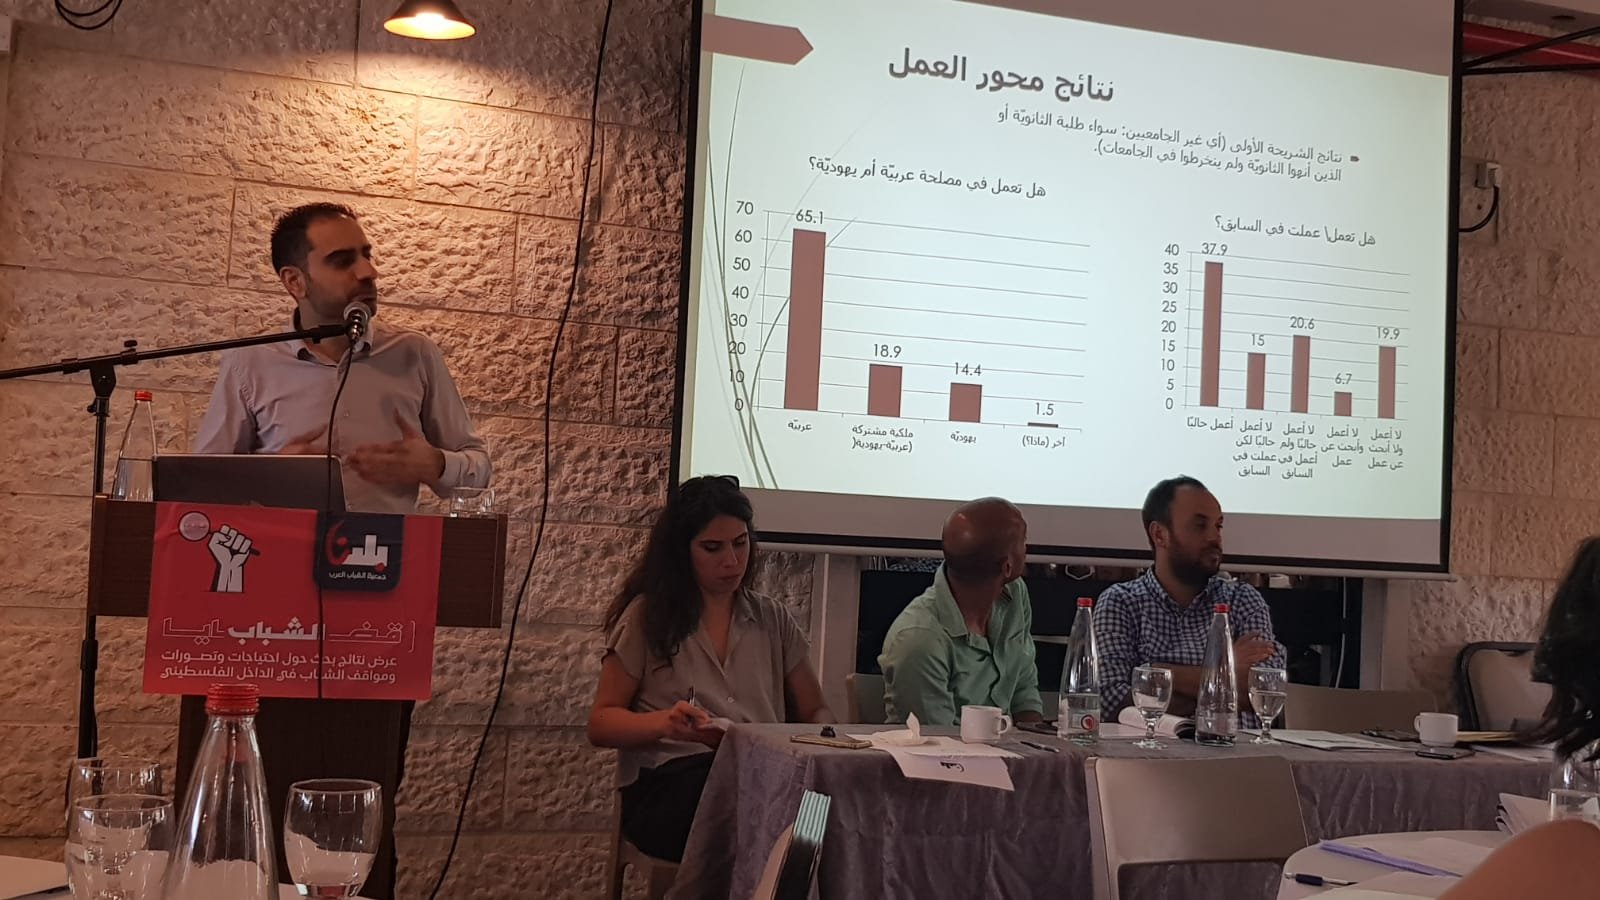 مؤتمر "قضايا الشباب": عرض نتائج بحث حول احتياجات وتصورات ومواقف الشباب في الداخل الفلسطيني-1